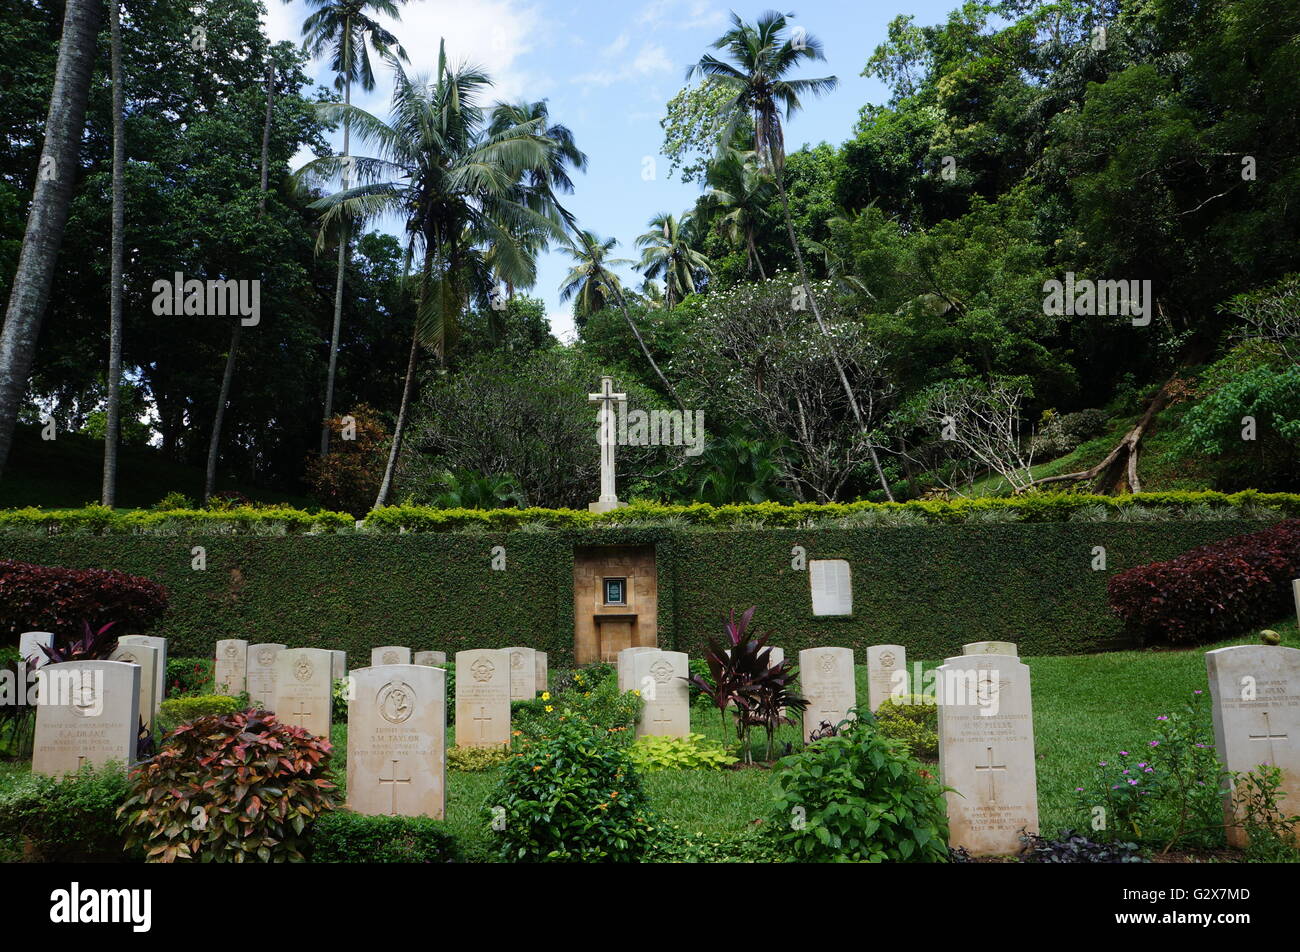 Pierres tombales de la et de l'Asie du Sud soldats tombés pendant la Seconde guerre mondiale contre l'armée japonaise au cimetière de guerre de Kandy, Sri Lanka. Banque D'Images